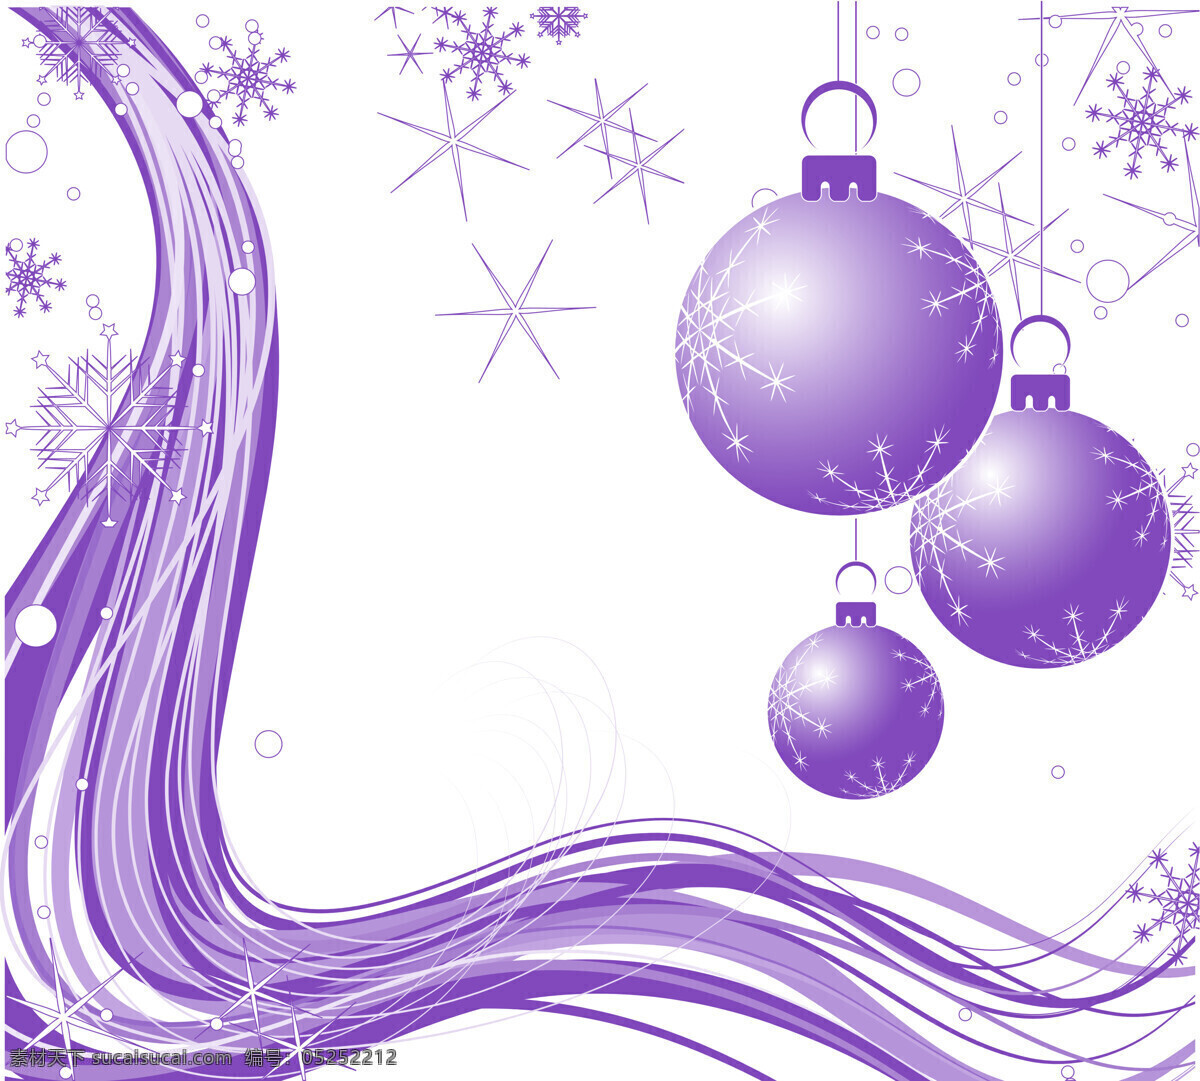 紫色圣诞彩球 圣诞 紫色 彩球 吊饰 雪花 白雪 结晶 晶亮 星芒 圆弧 弧线 流动 律动 冬日 圣诞快乐 圣诞卡 卡片素材 背景 底图 聖誕背景 节日庆祝 文化艺术